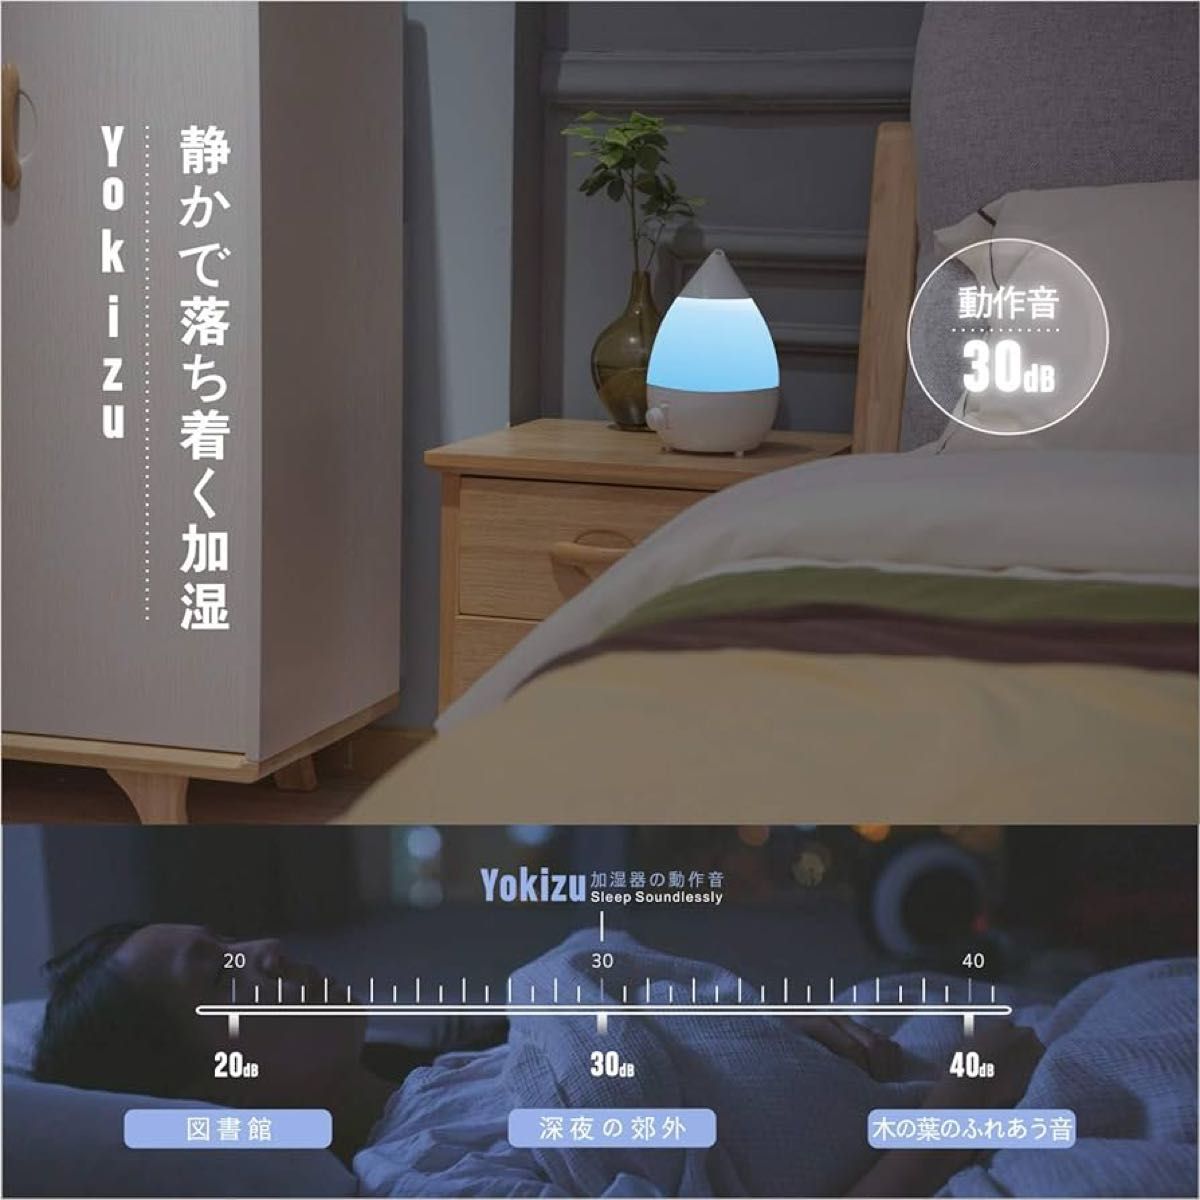 【箱なし美品】Yokizu 加湿器 卓上 アロマ 大容量 超音波式 しずく型 LED